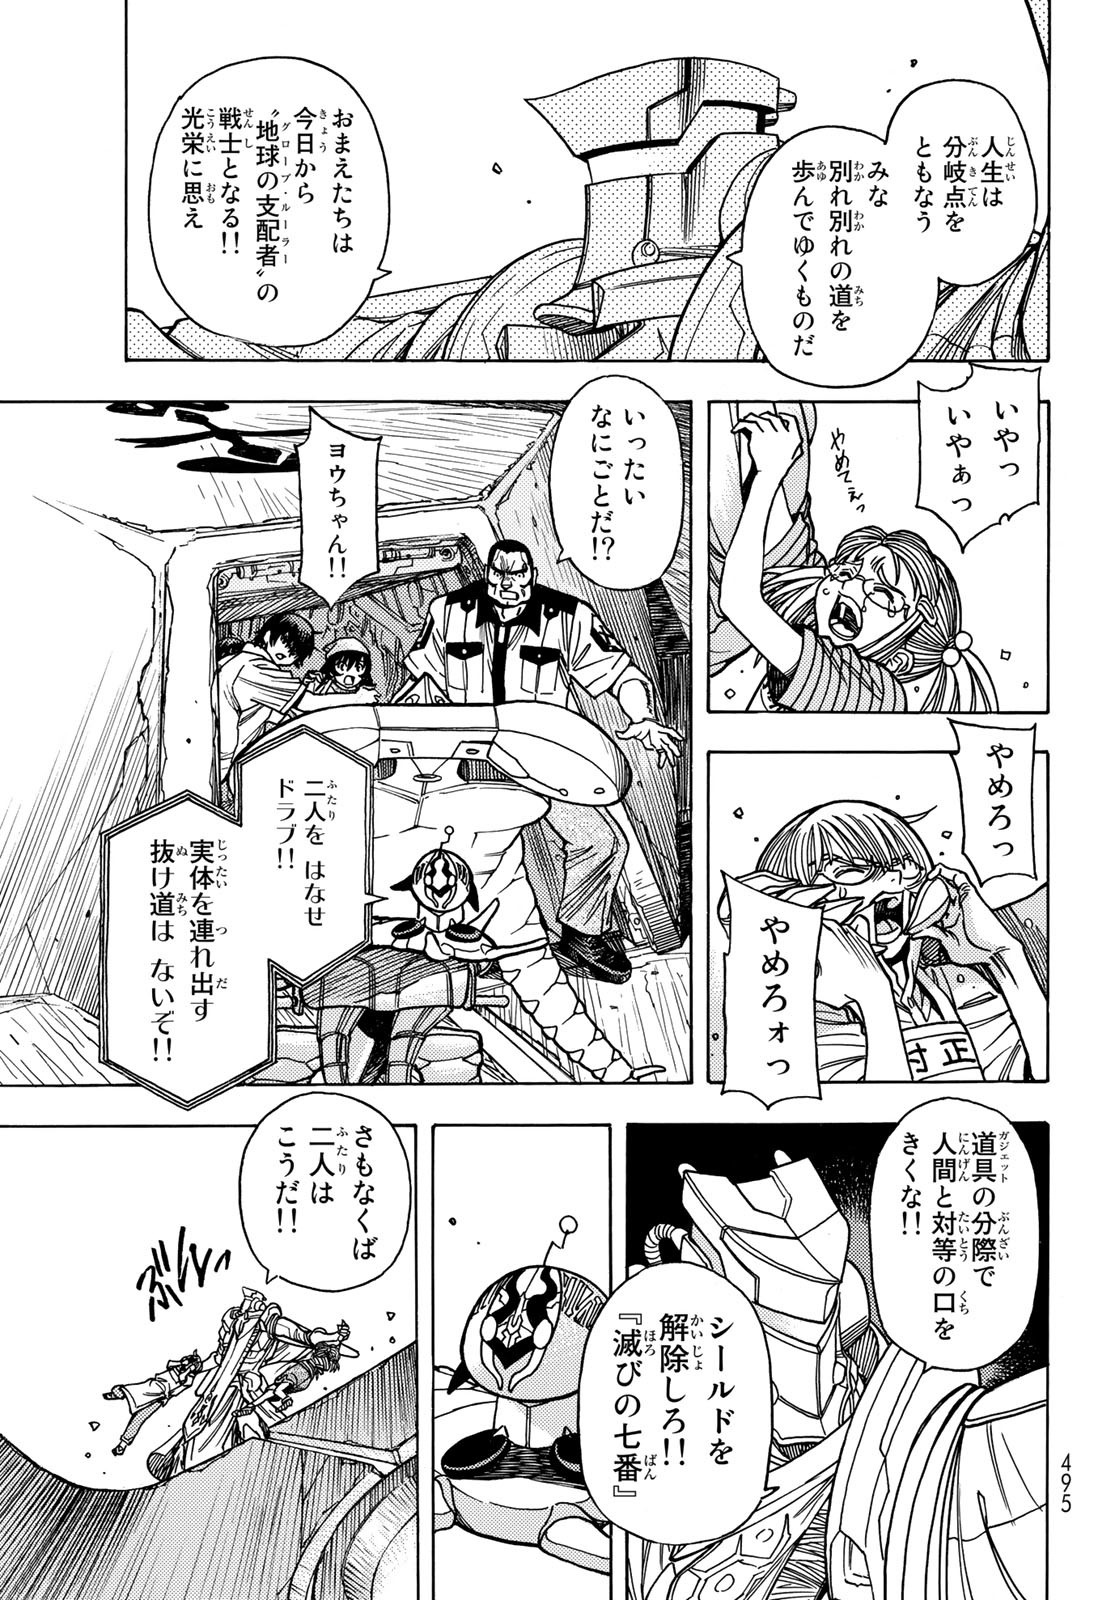 Mugou no Schnell Gear: Chikyuugai Kisouka AI - Chapter 37 - Page 21